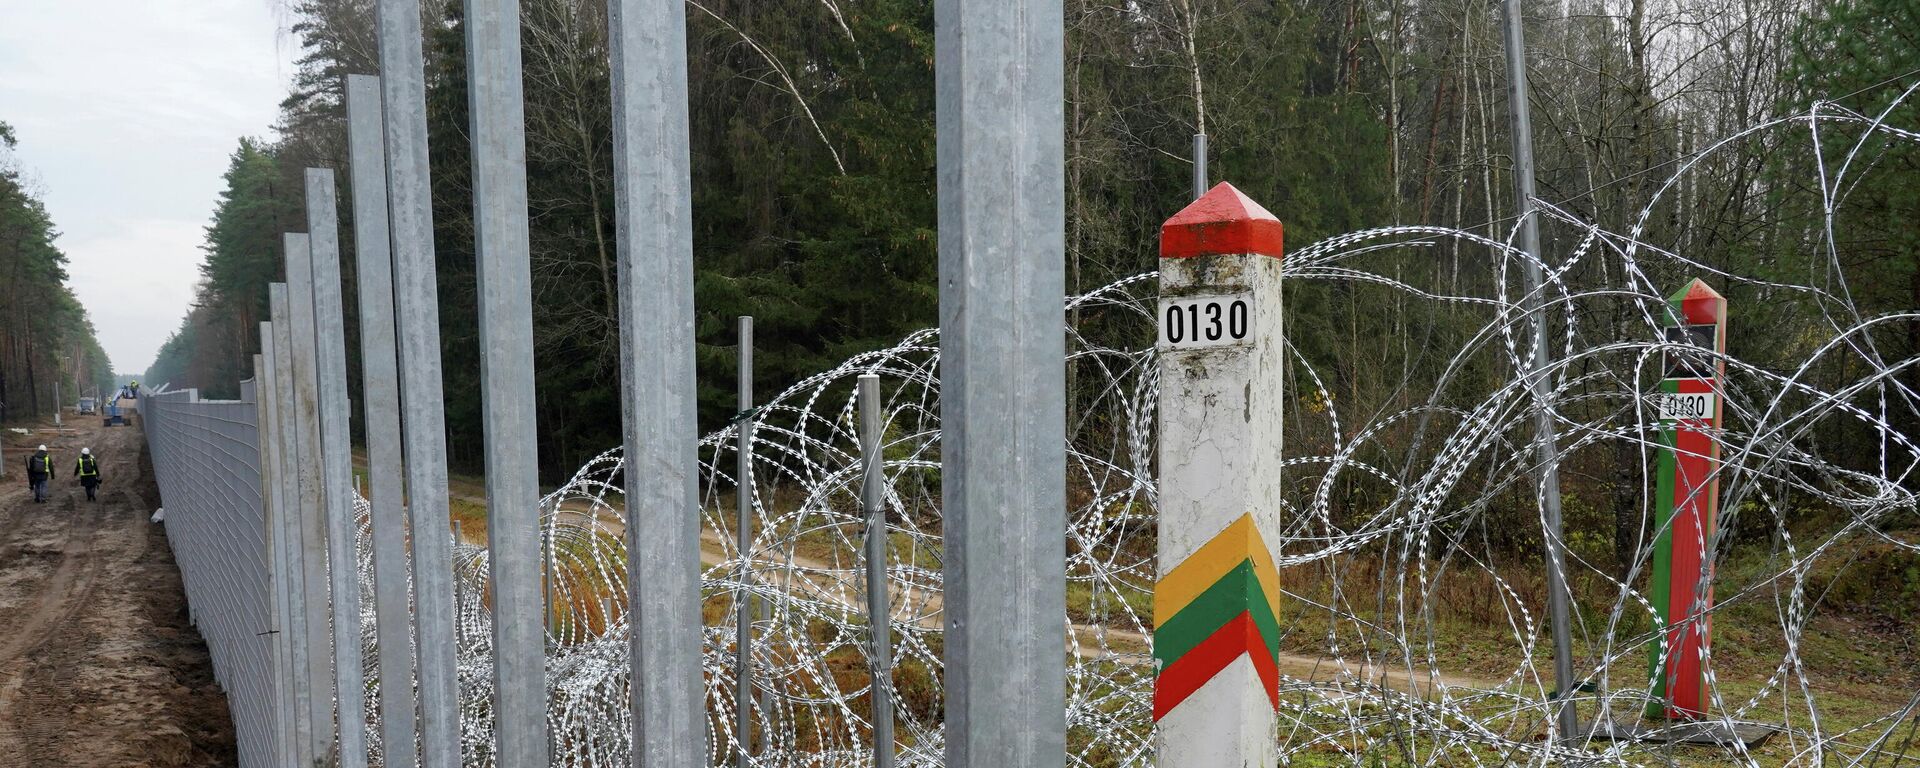 Забор и приграничные столбы на границе Литвы и Белоруссии - Sputnik Литва, 1920, 09.11.2021